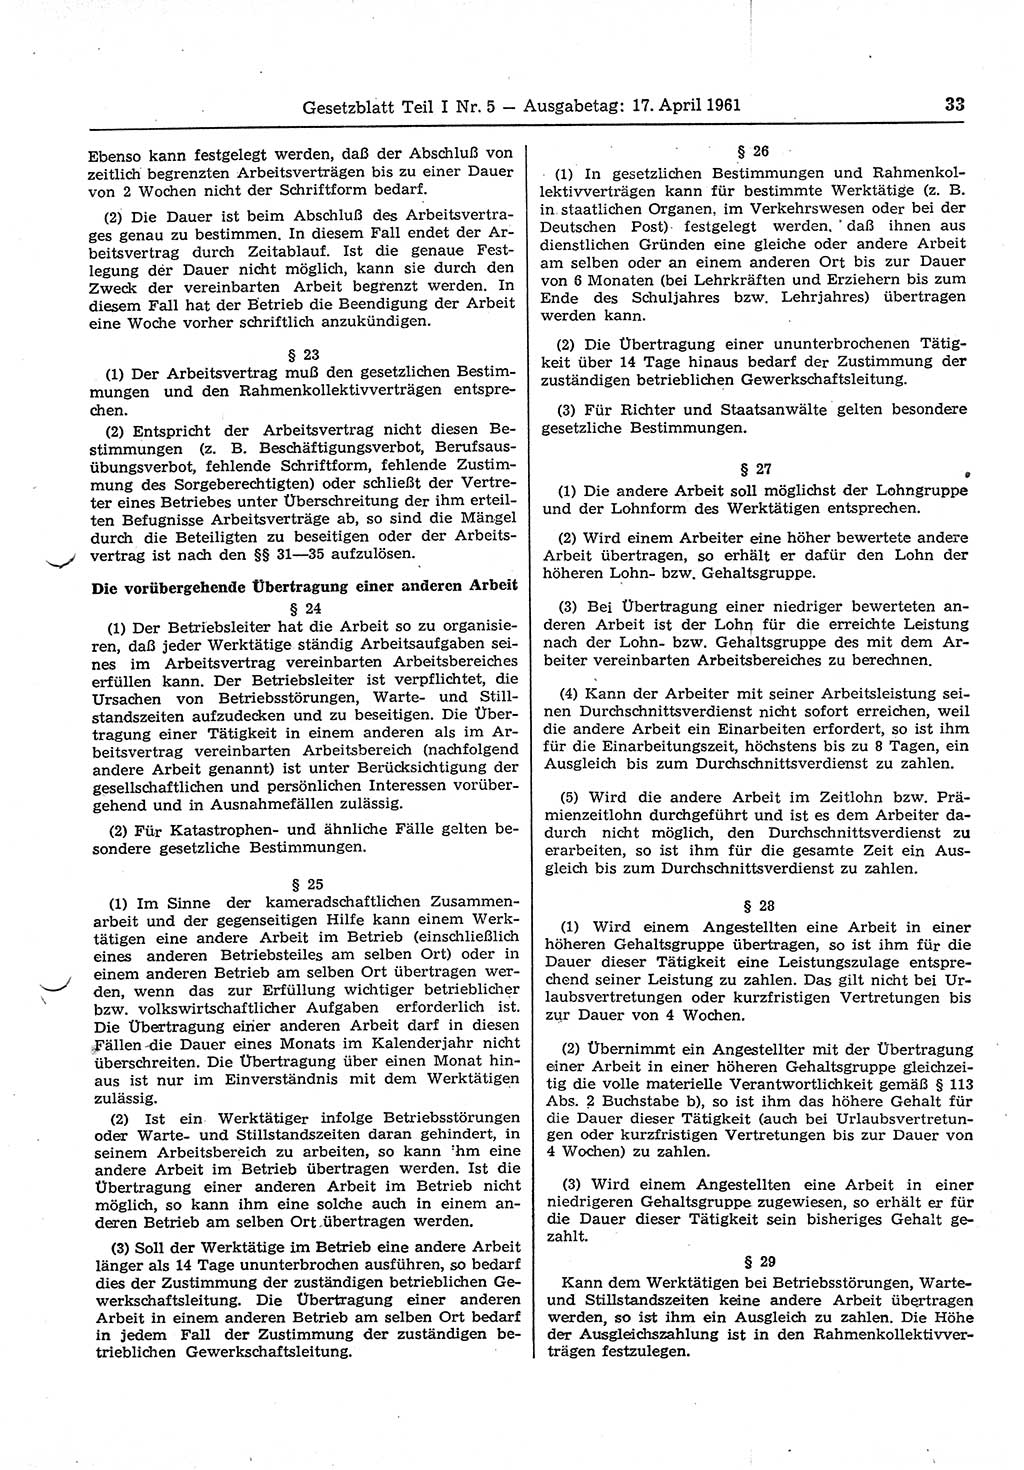 Gesetzblatt (GBl.) der Deutschen Demokratischen Republik (DDR) Teil Ⅰ 1961, Seite 33 (GBl. DDR Ⅰ 1961, S. 33)